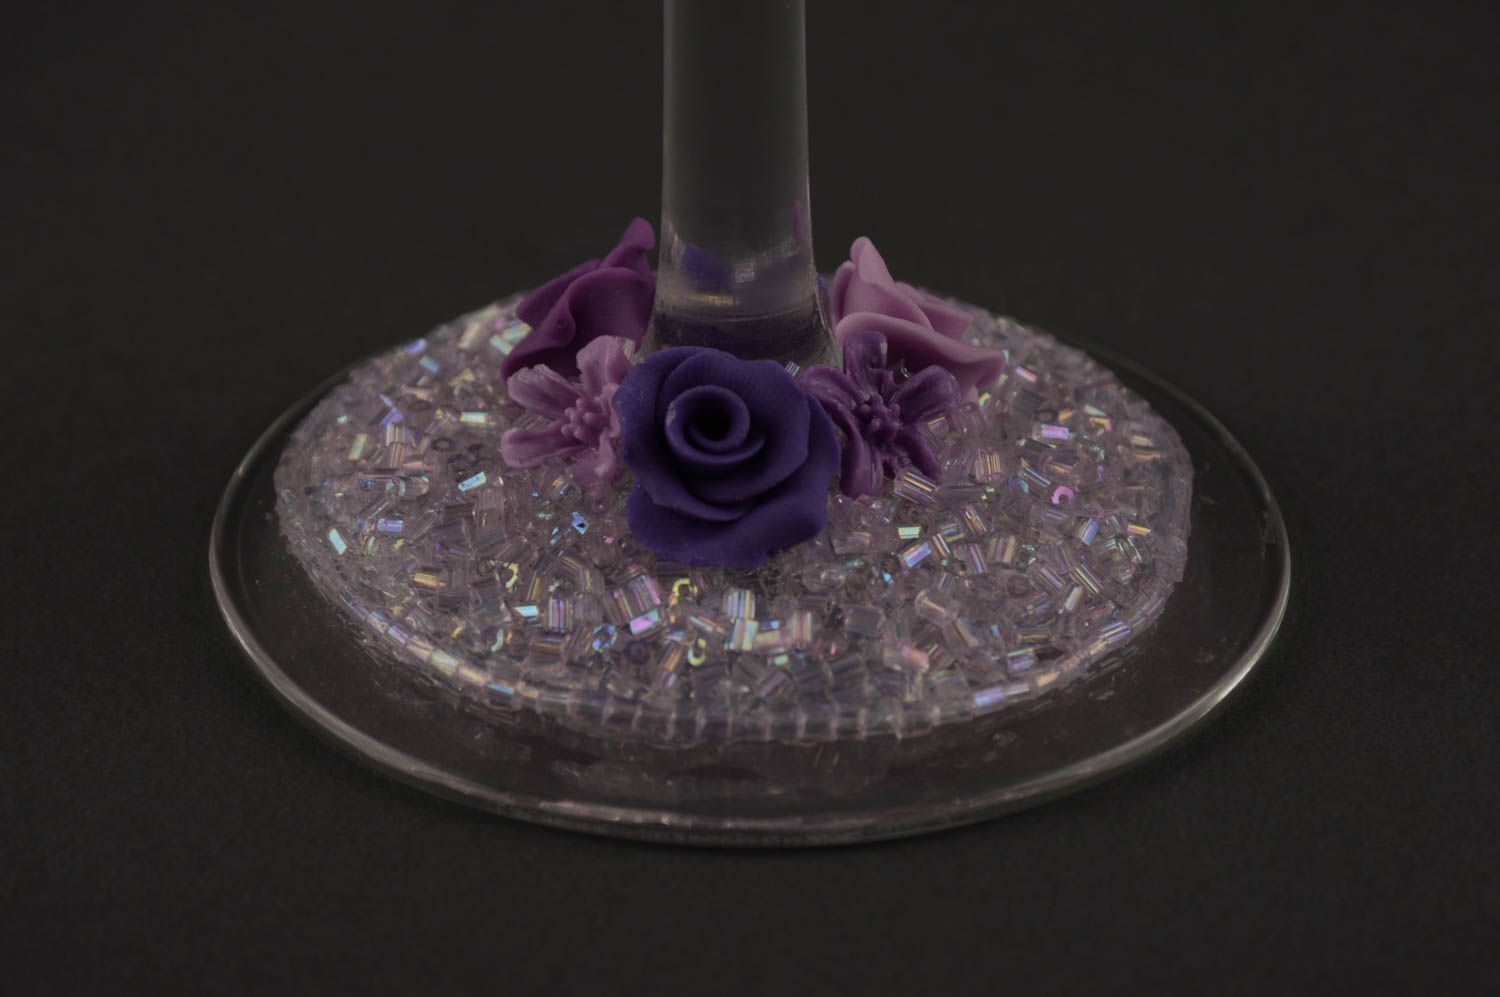 Verres à pied fait main Vaisselle en verre violets avec fleurs Idée cadeau 2 pcs photo 8